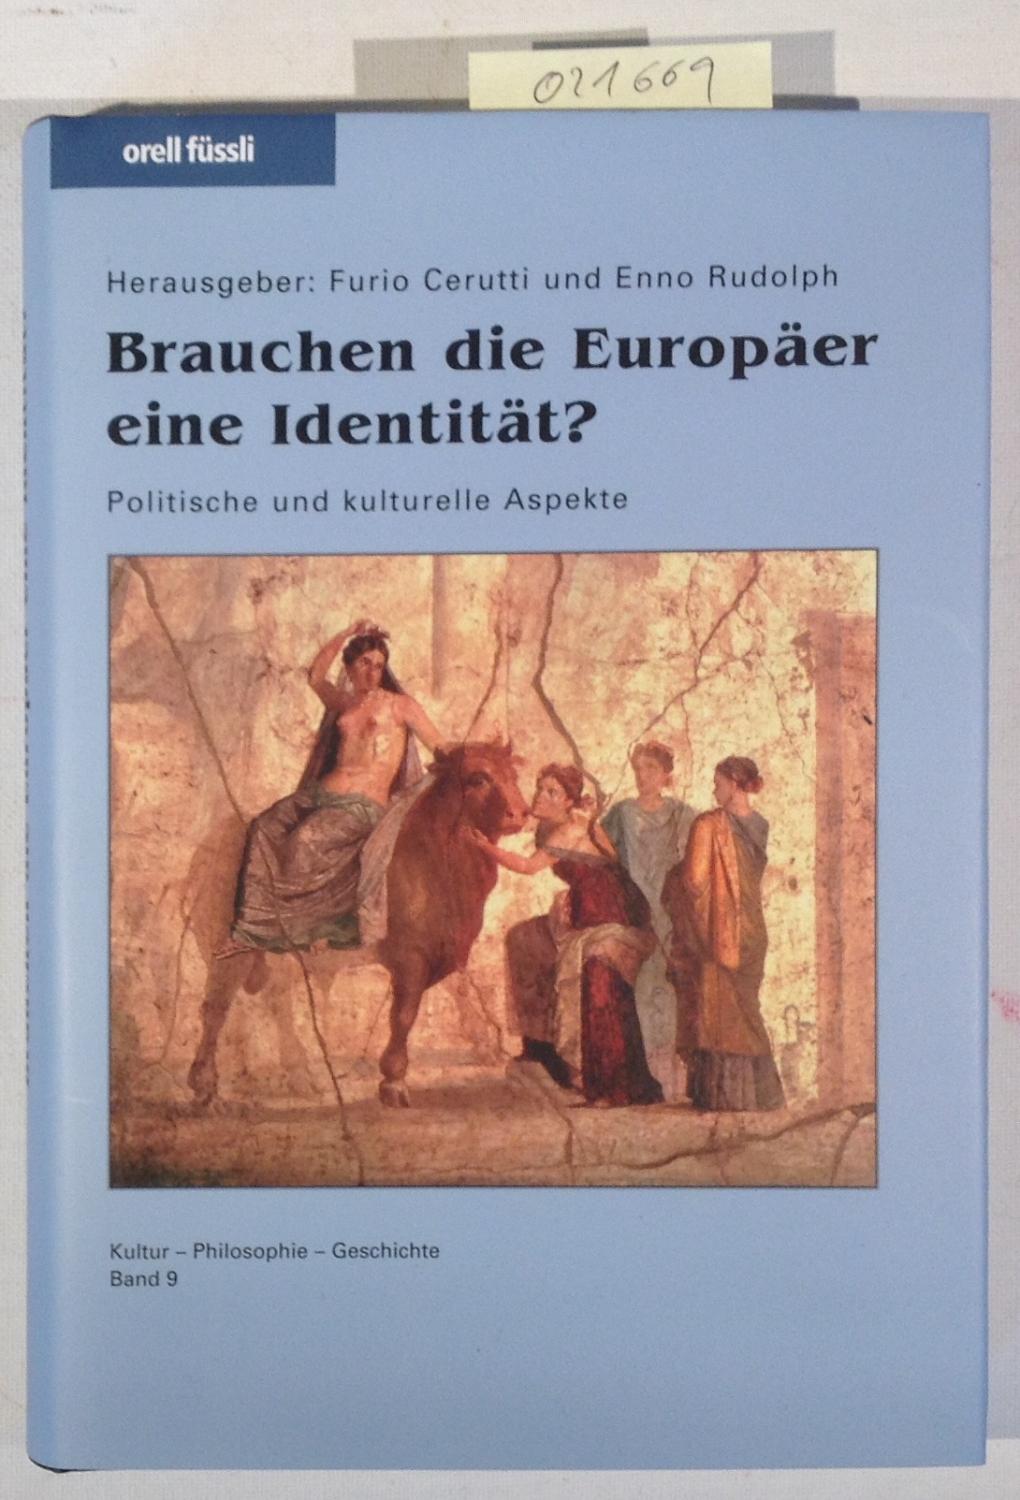 Brauchen die Europäer eine Identität?: Politische und kulturelle Aspekte - Kultur-Philosophie-Geschichte, Band 9 - Rudolph, Enno; Cerutti, Furio - Herausgeber